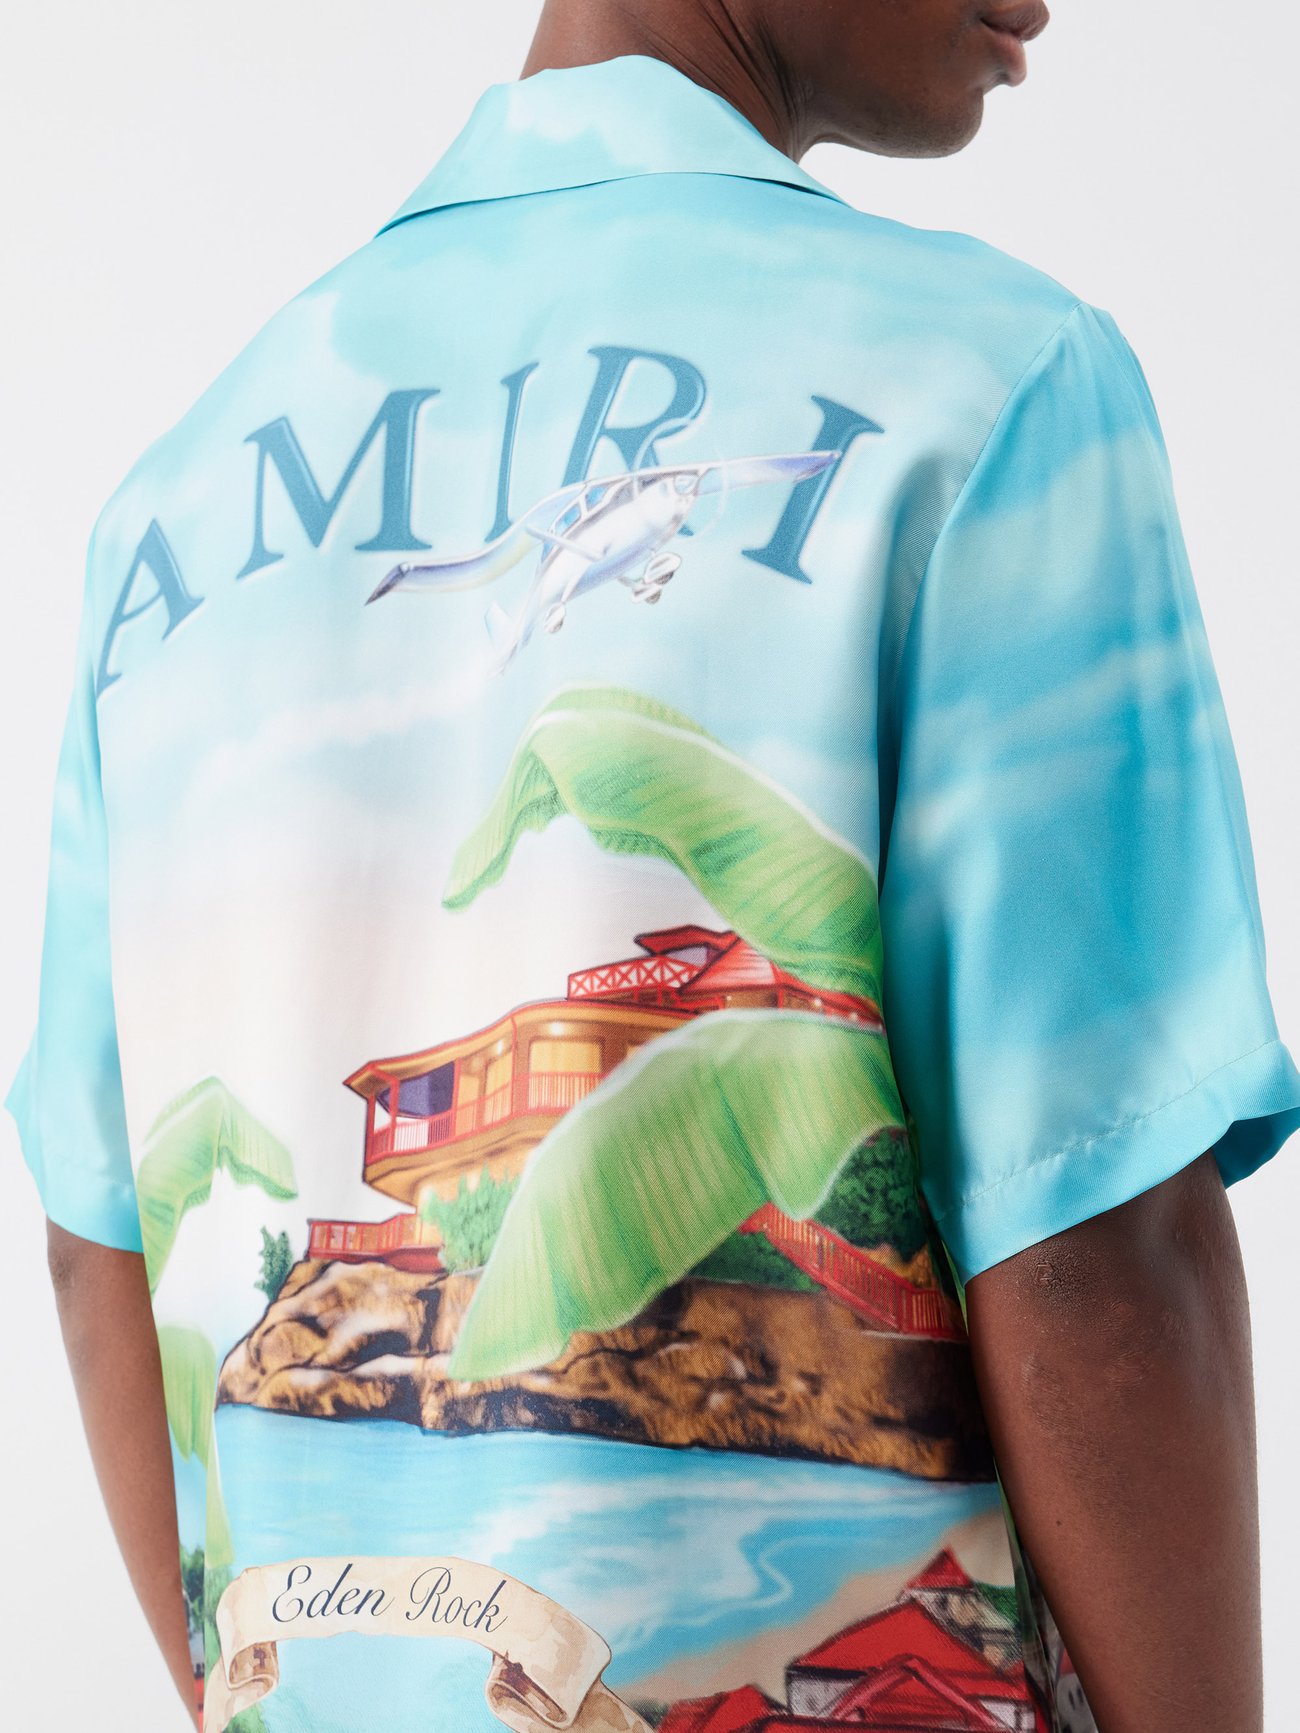 Amiri Eden Rock T-Shirt